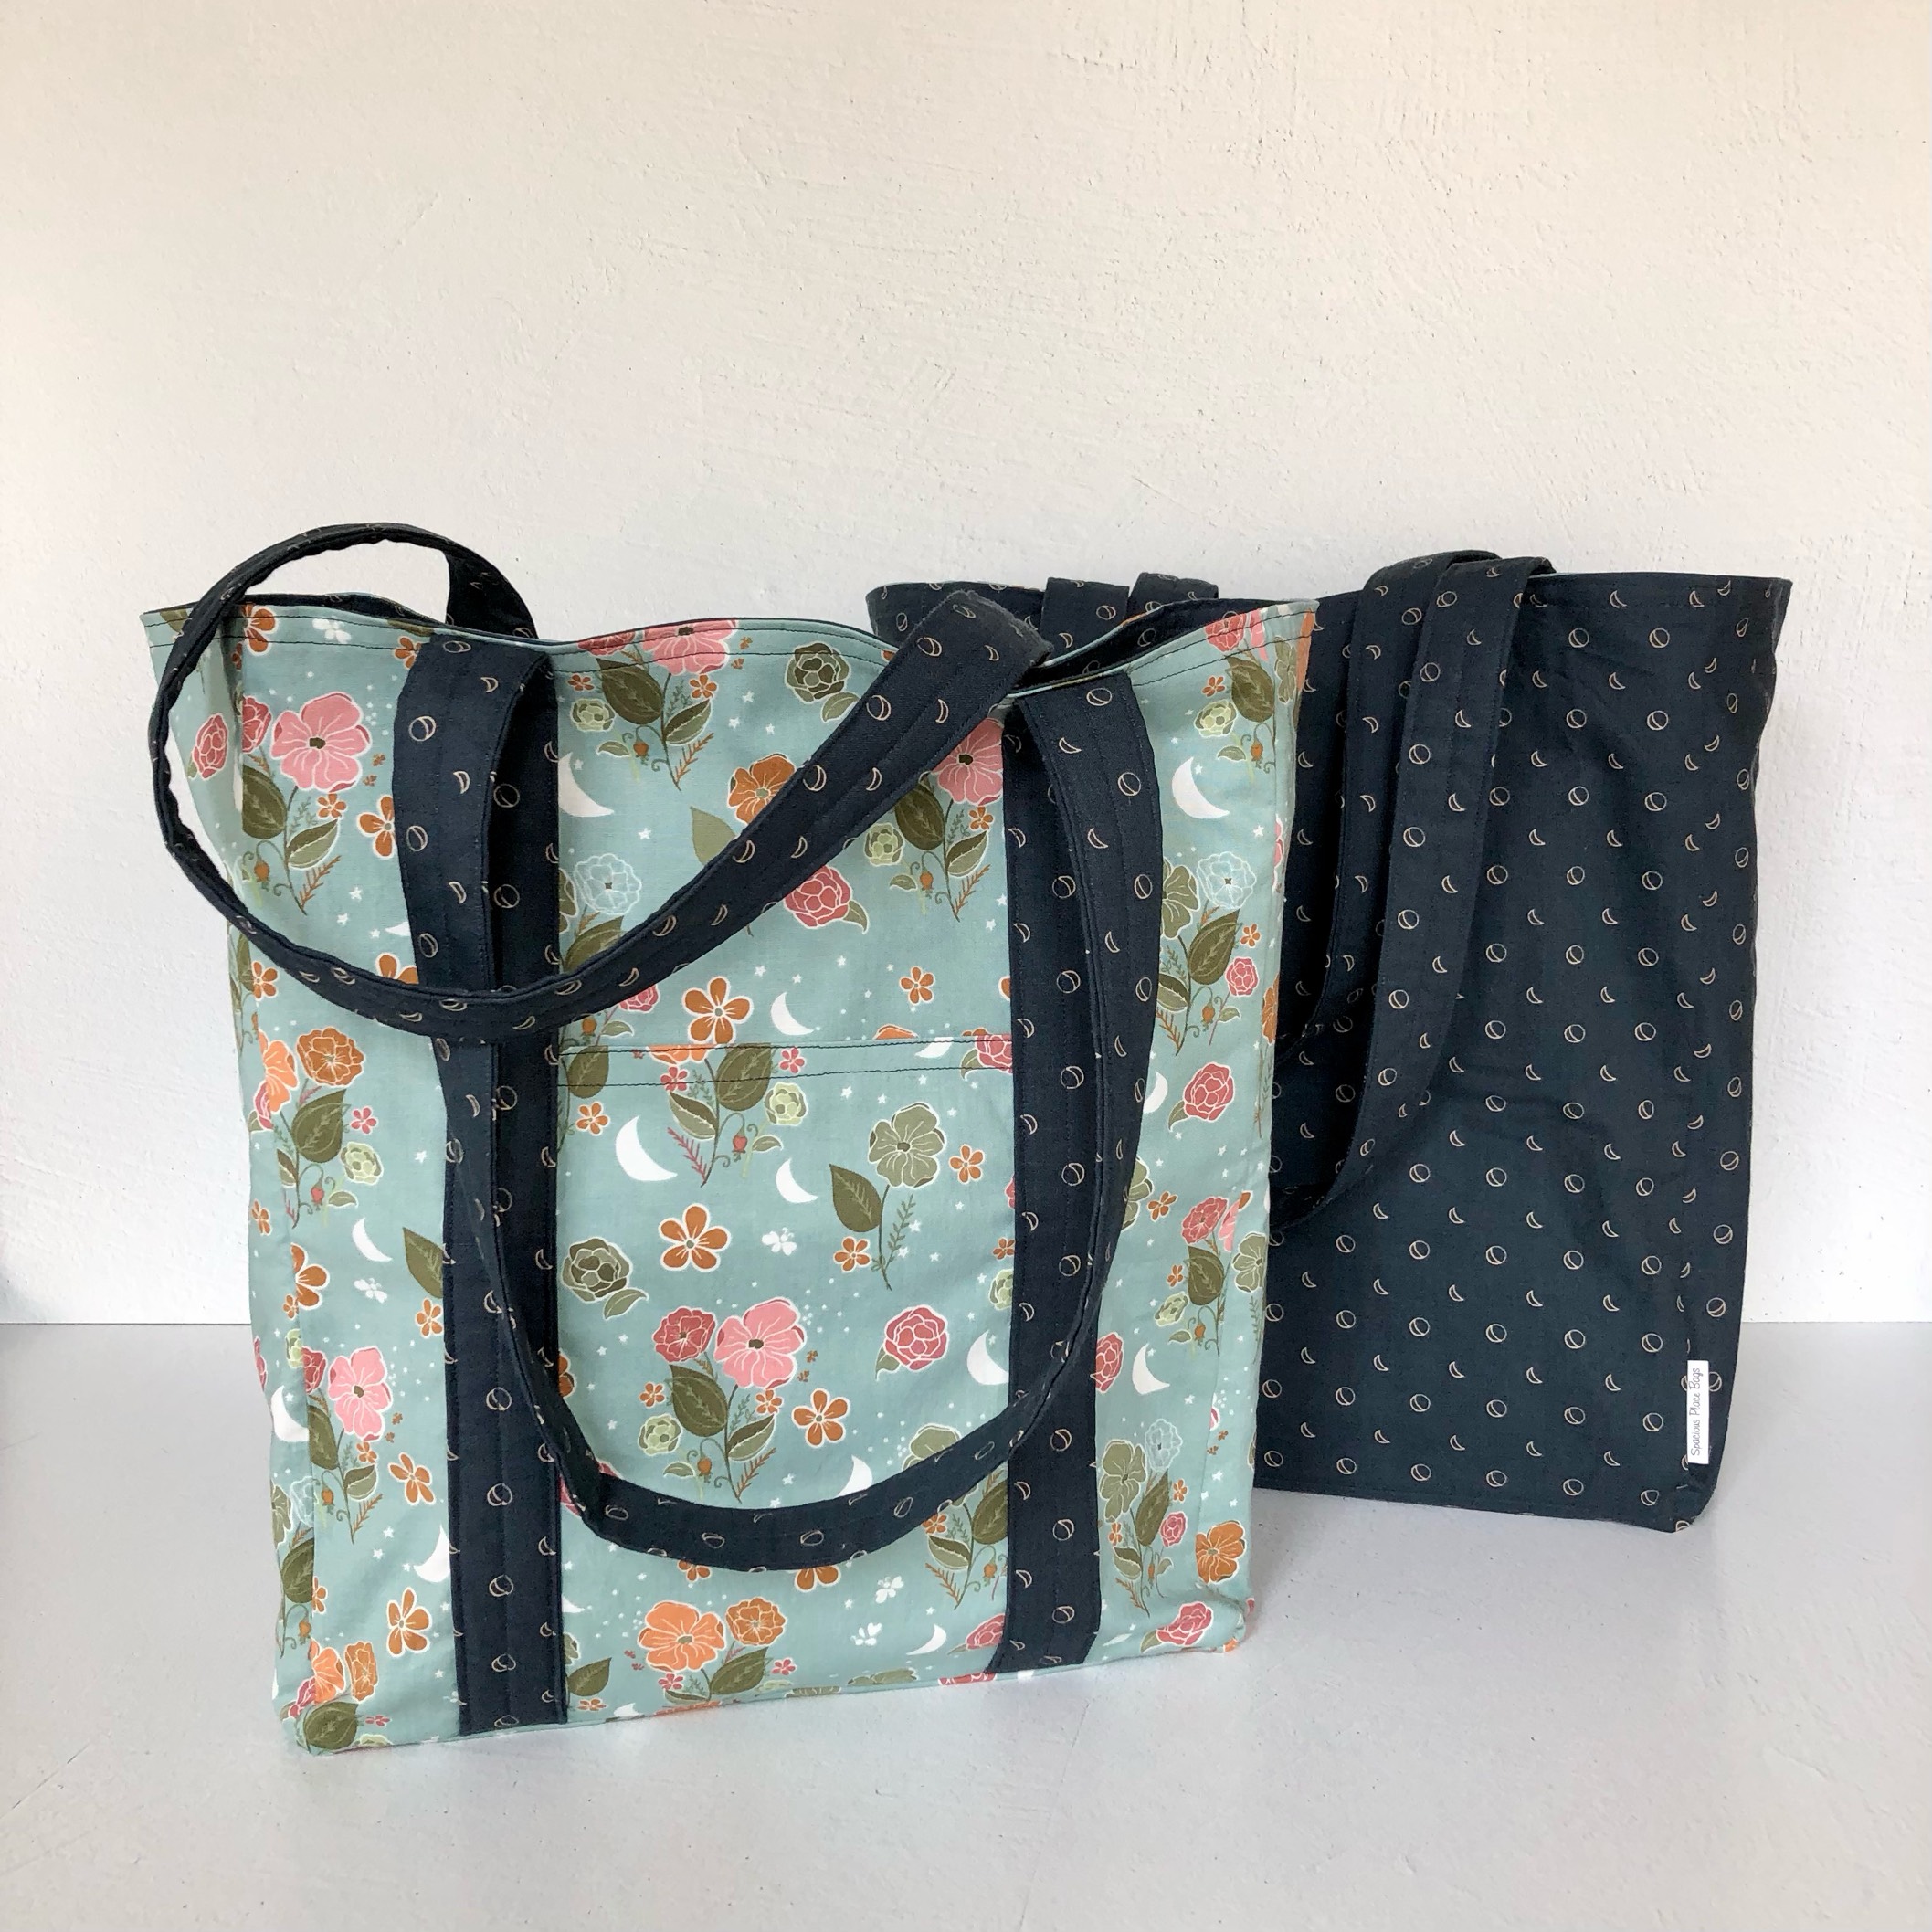 Floral/moon market bag